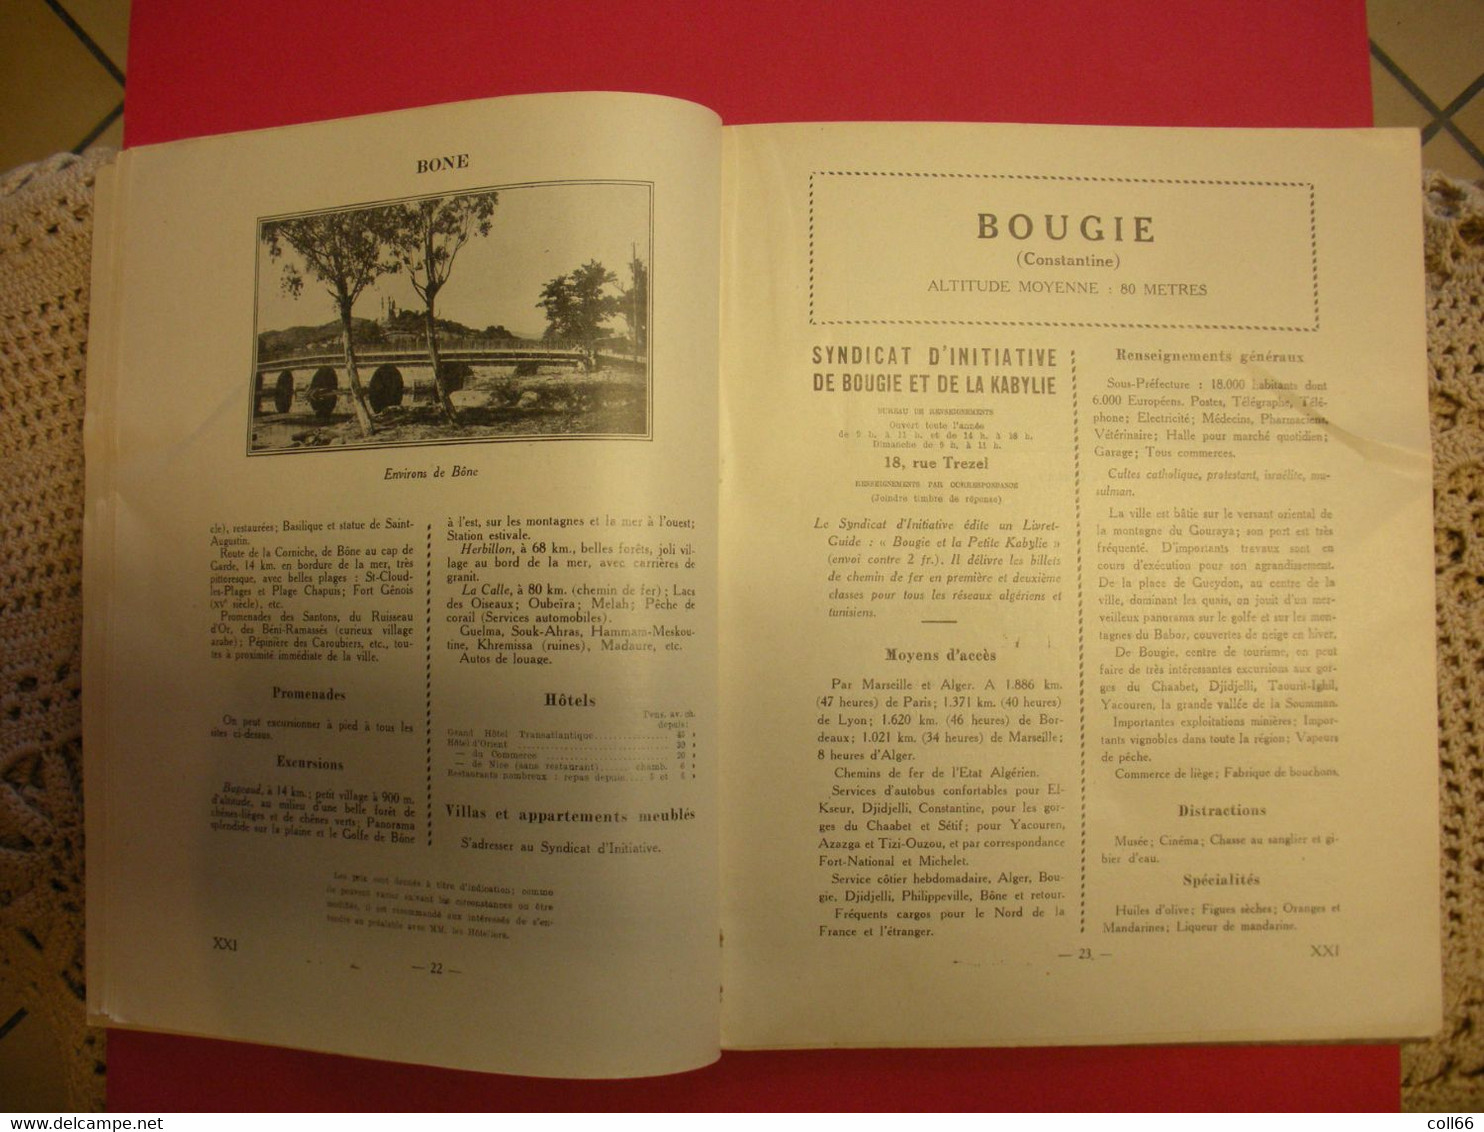 1924 RARE Brochure Algérie Fédération des Syndicats d'Initiative édit Office National du Tourisme